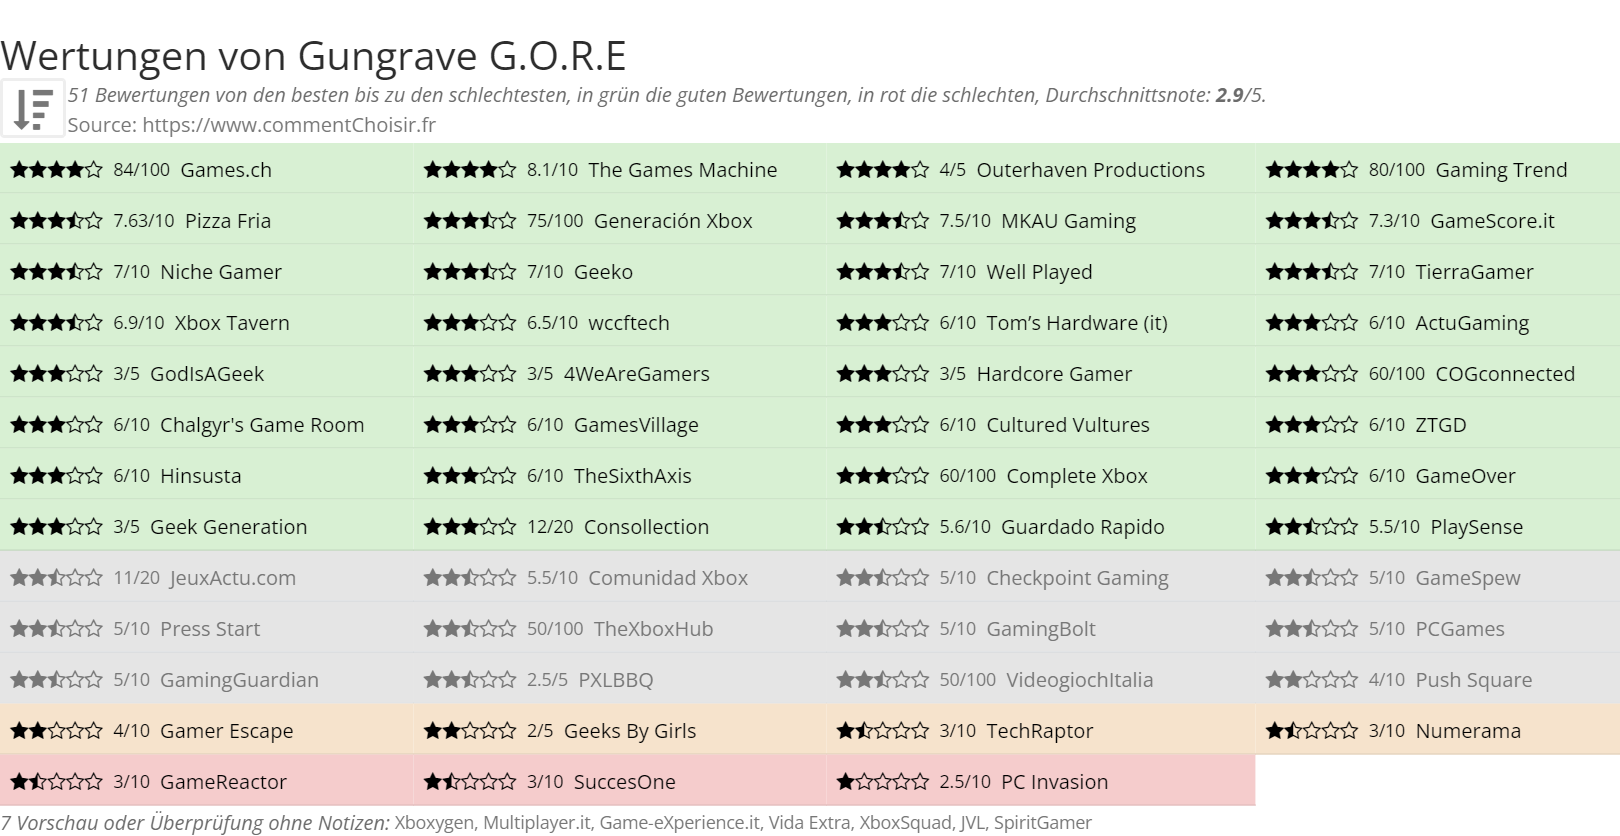 Ratings Gungrave G.O.R.E